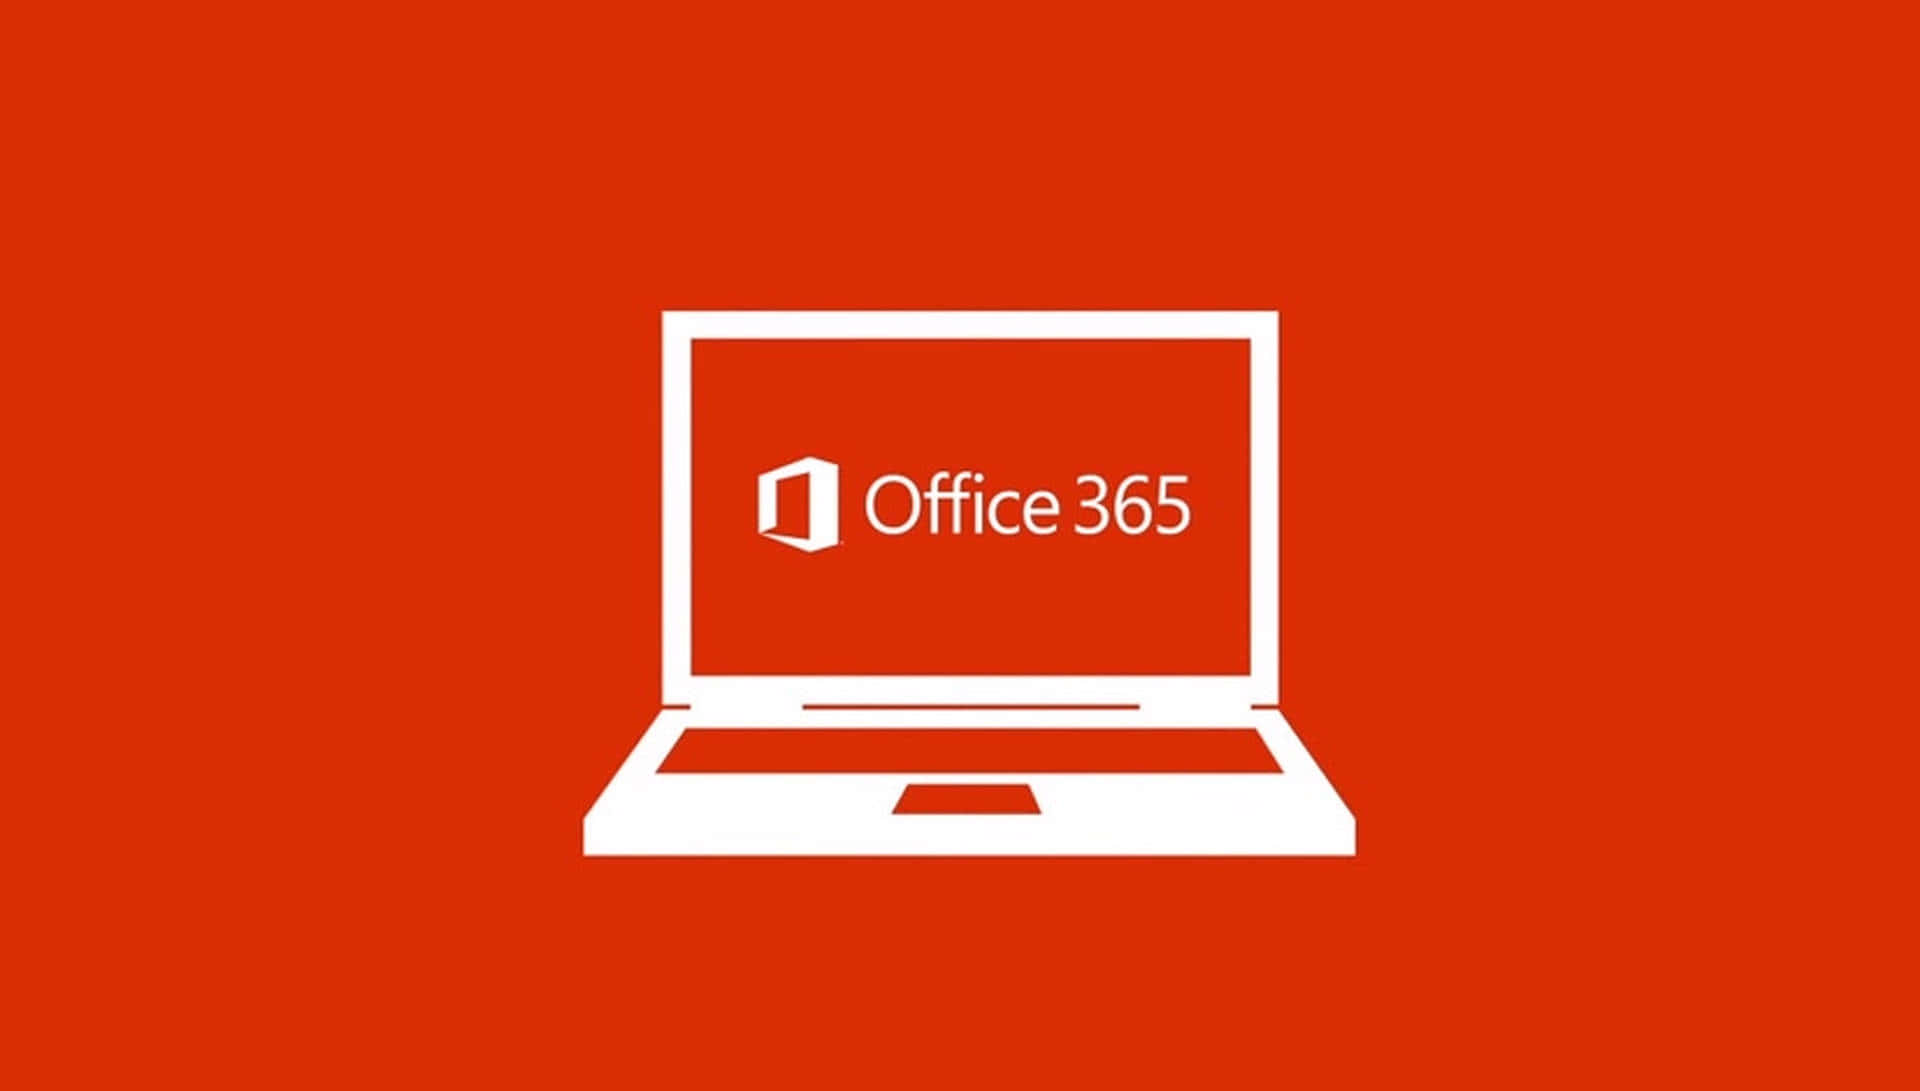 Office365-logo På En Rød Baggrund.